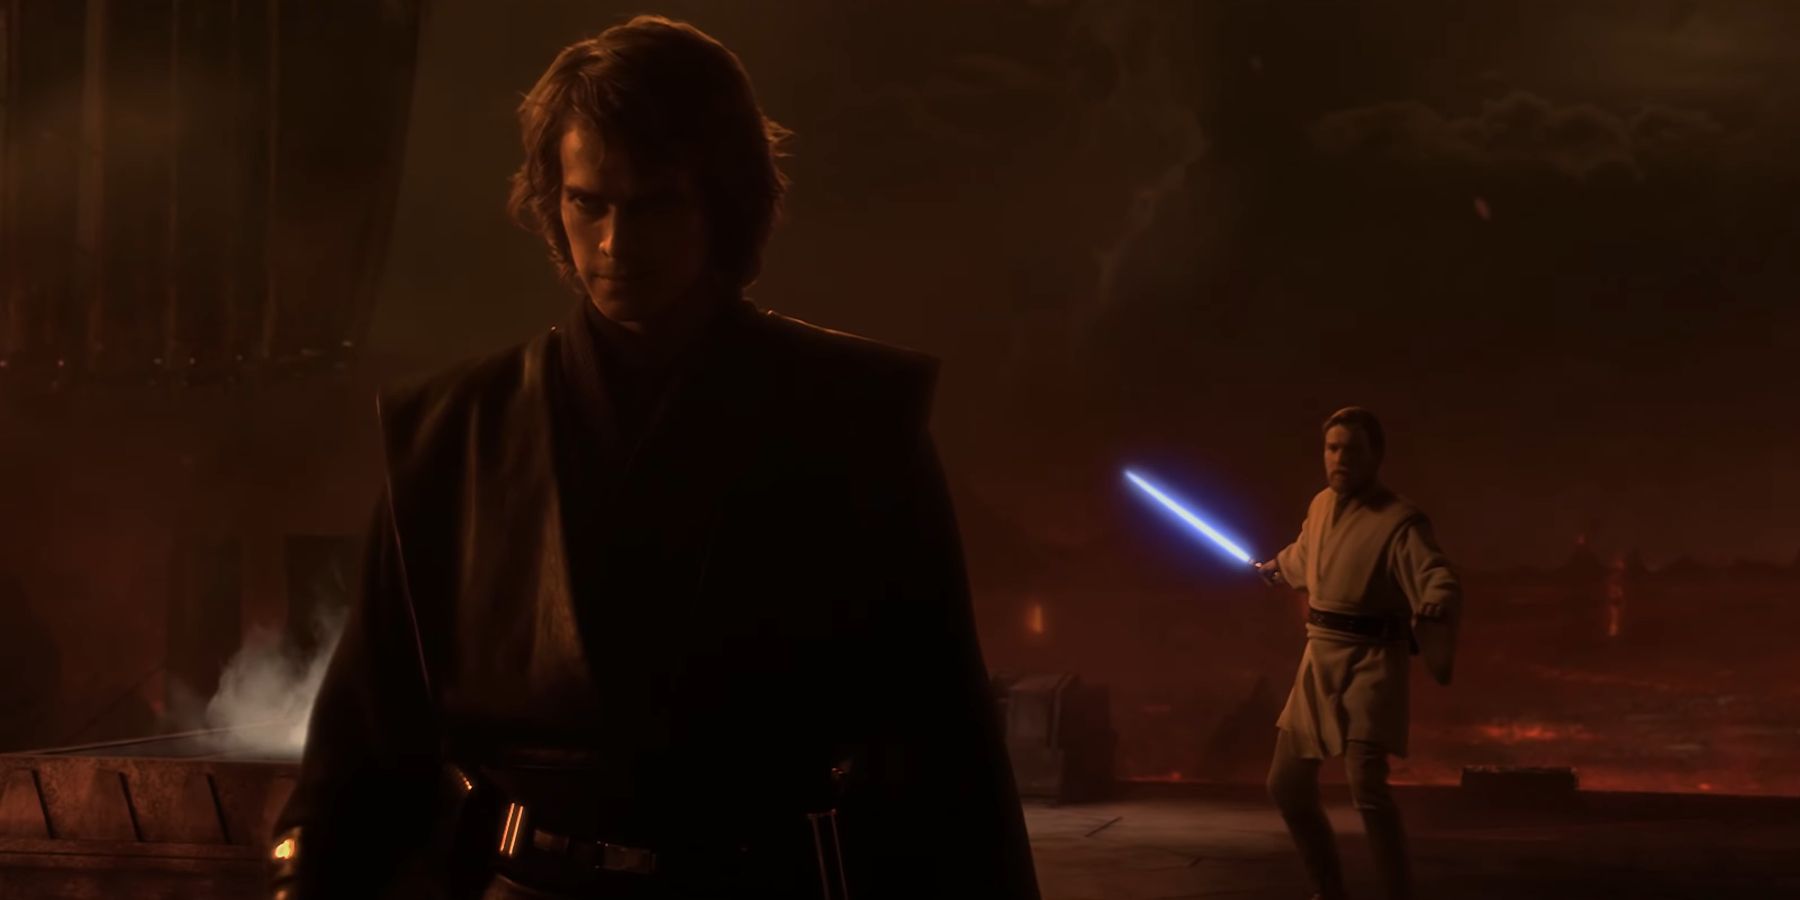 Obi-Wan Kenobi igniting his lightsaber before Anakin Skywalker in Star Wars Revenge Of The Sith